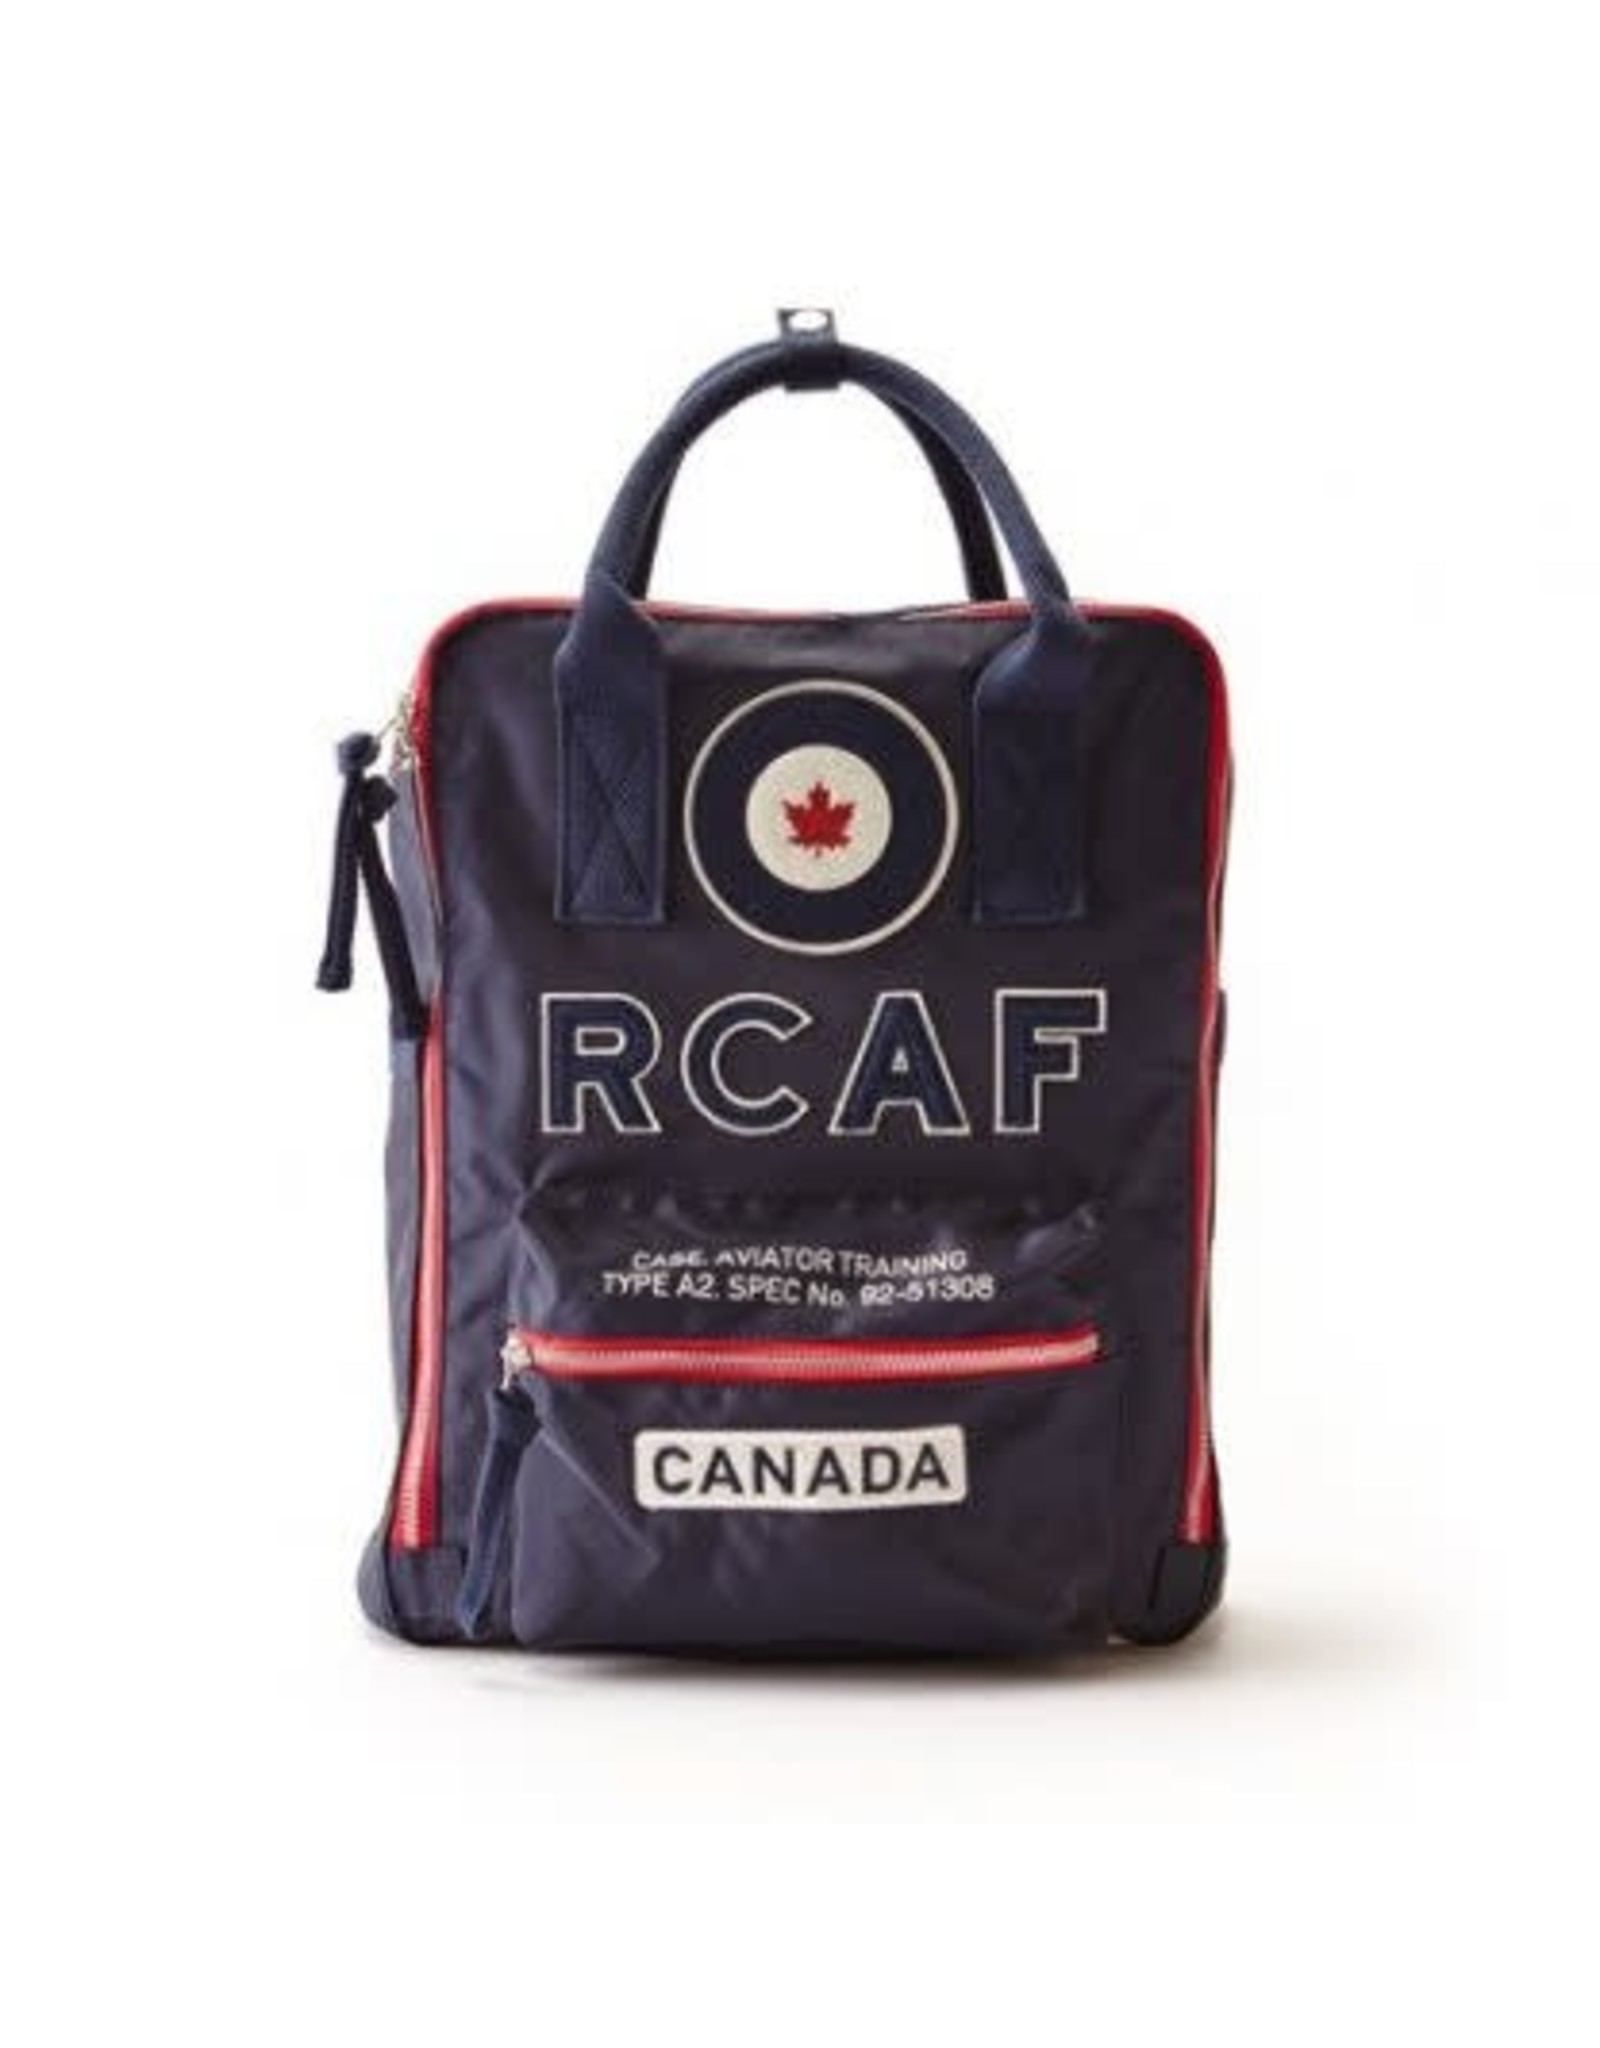 RCAF Backpack